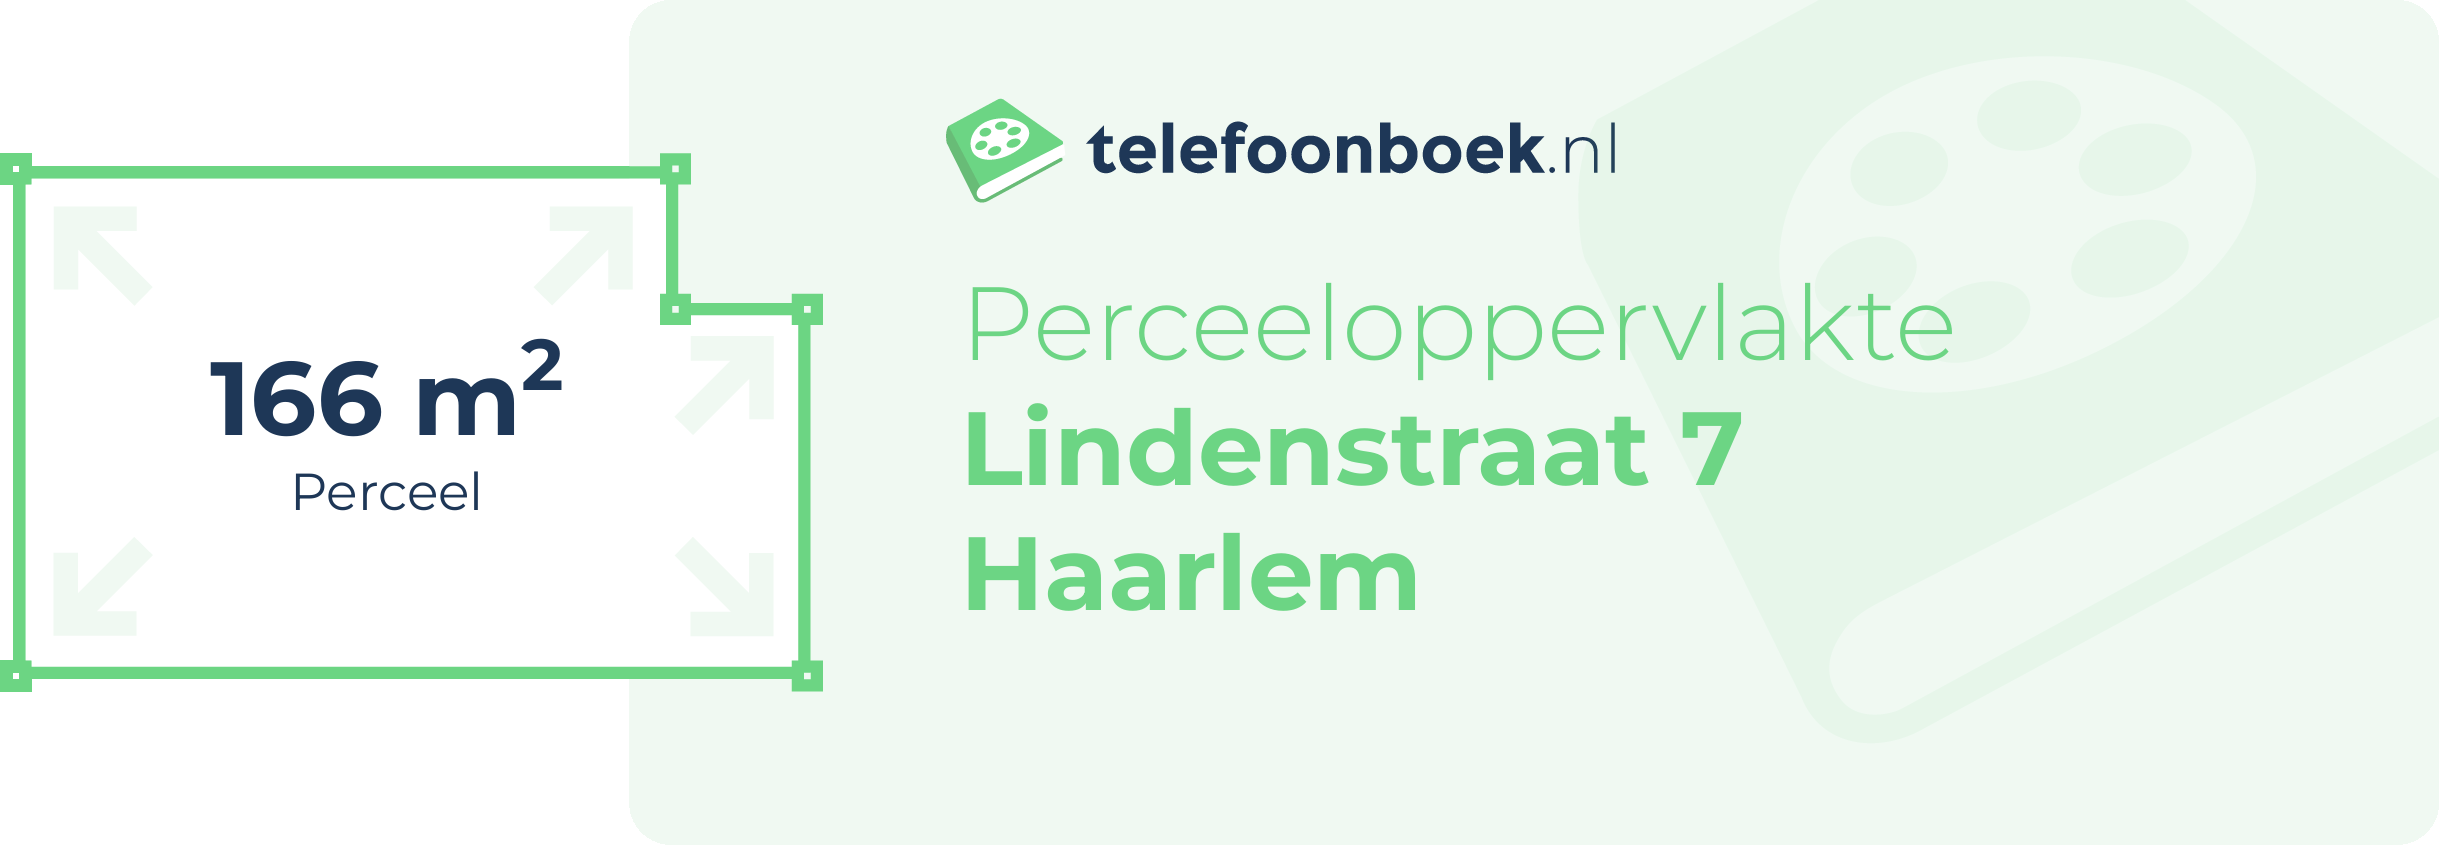 Perceeloppervlakte Lindenstraat 7 Haarlem